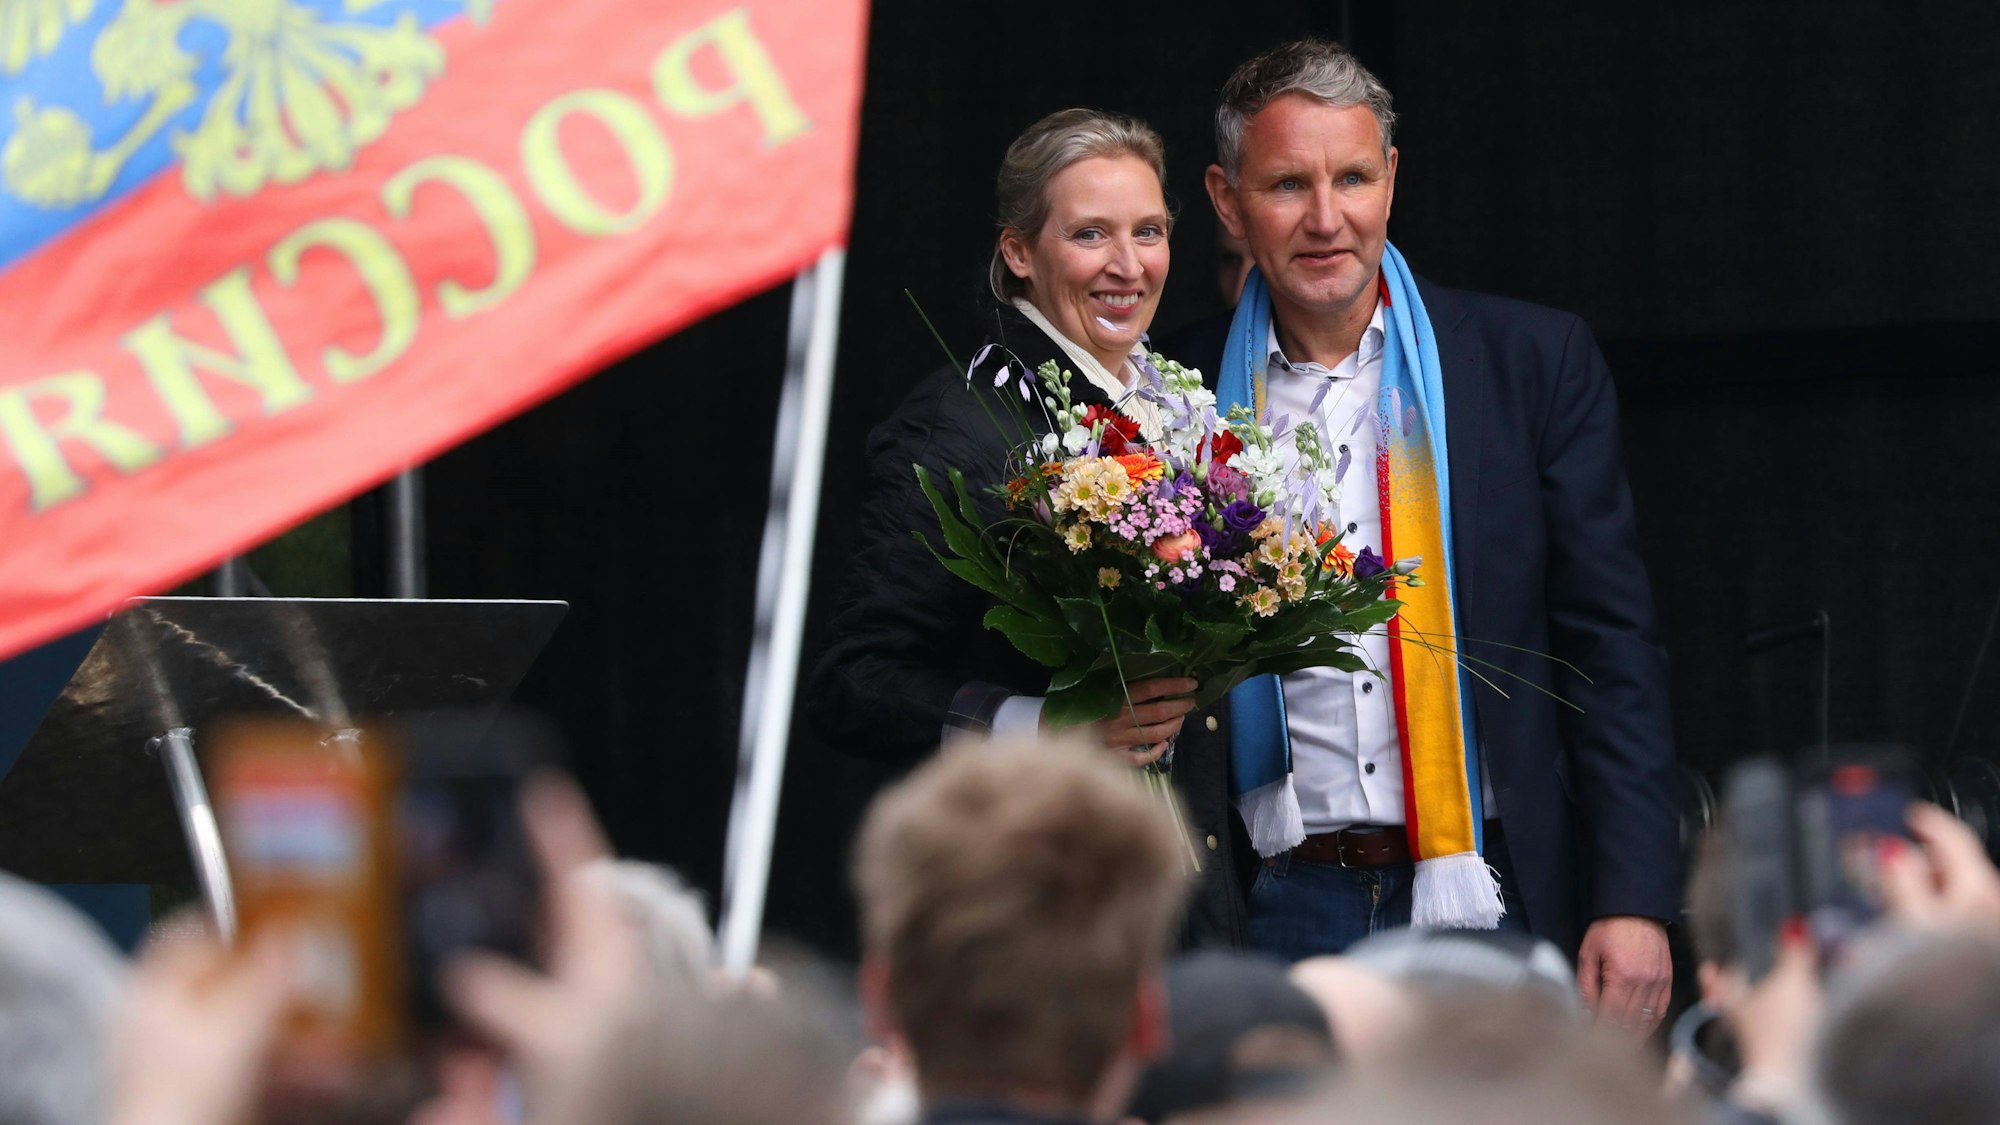 AfD-Chefin Alice Weidel zusammen mit dem Thüringer AfD-Politiker Björn Höcke bei einem Auftritt bei einer Parteiveranstaltung in Erfurt. Im Vordergrund ist eine russische Fahne zu sehen. (Archivbild)